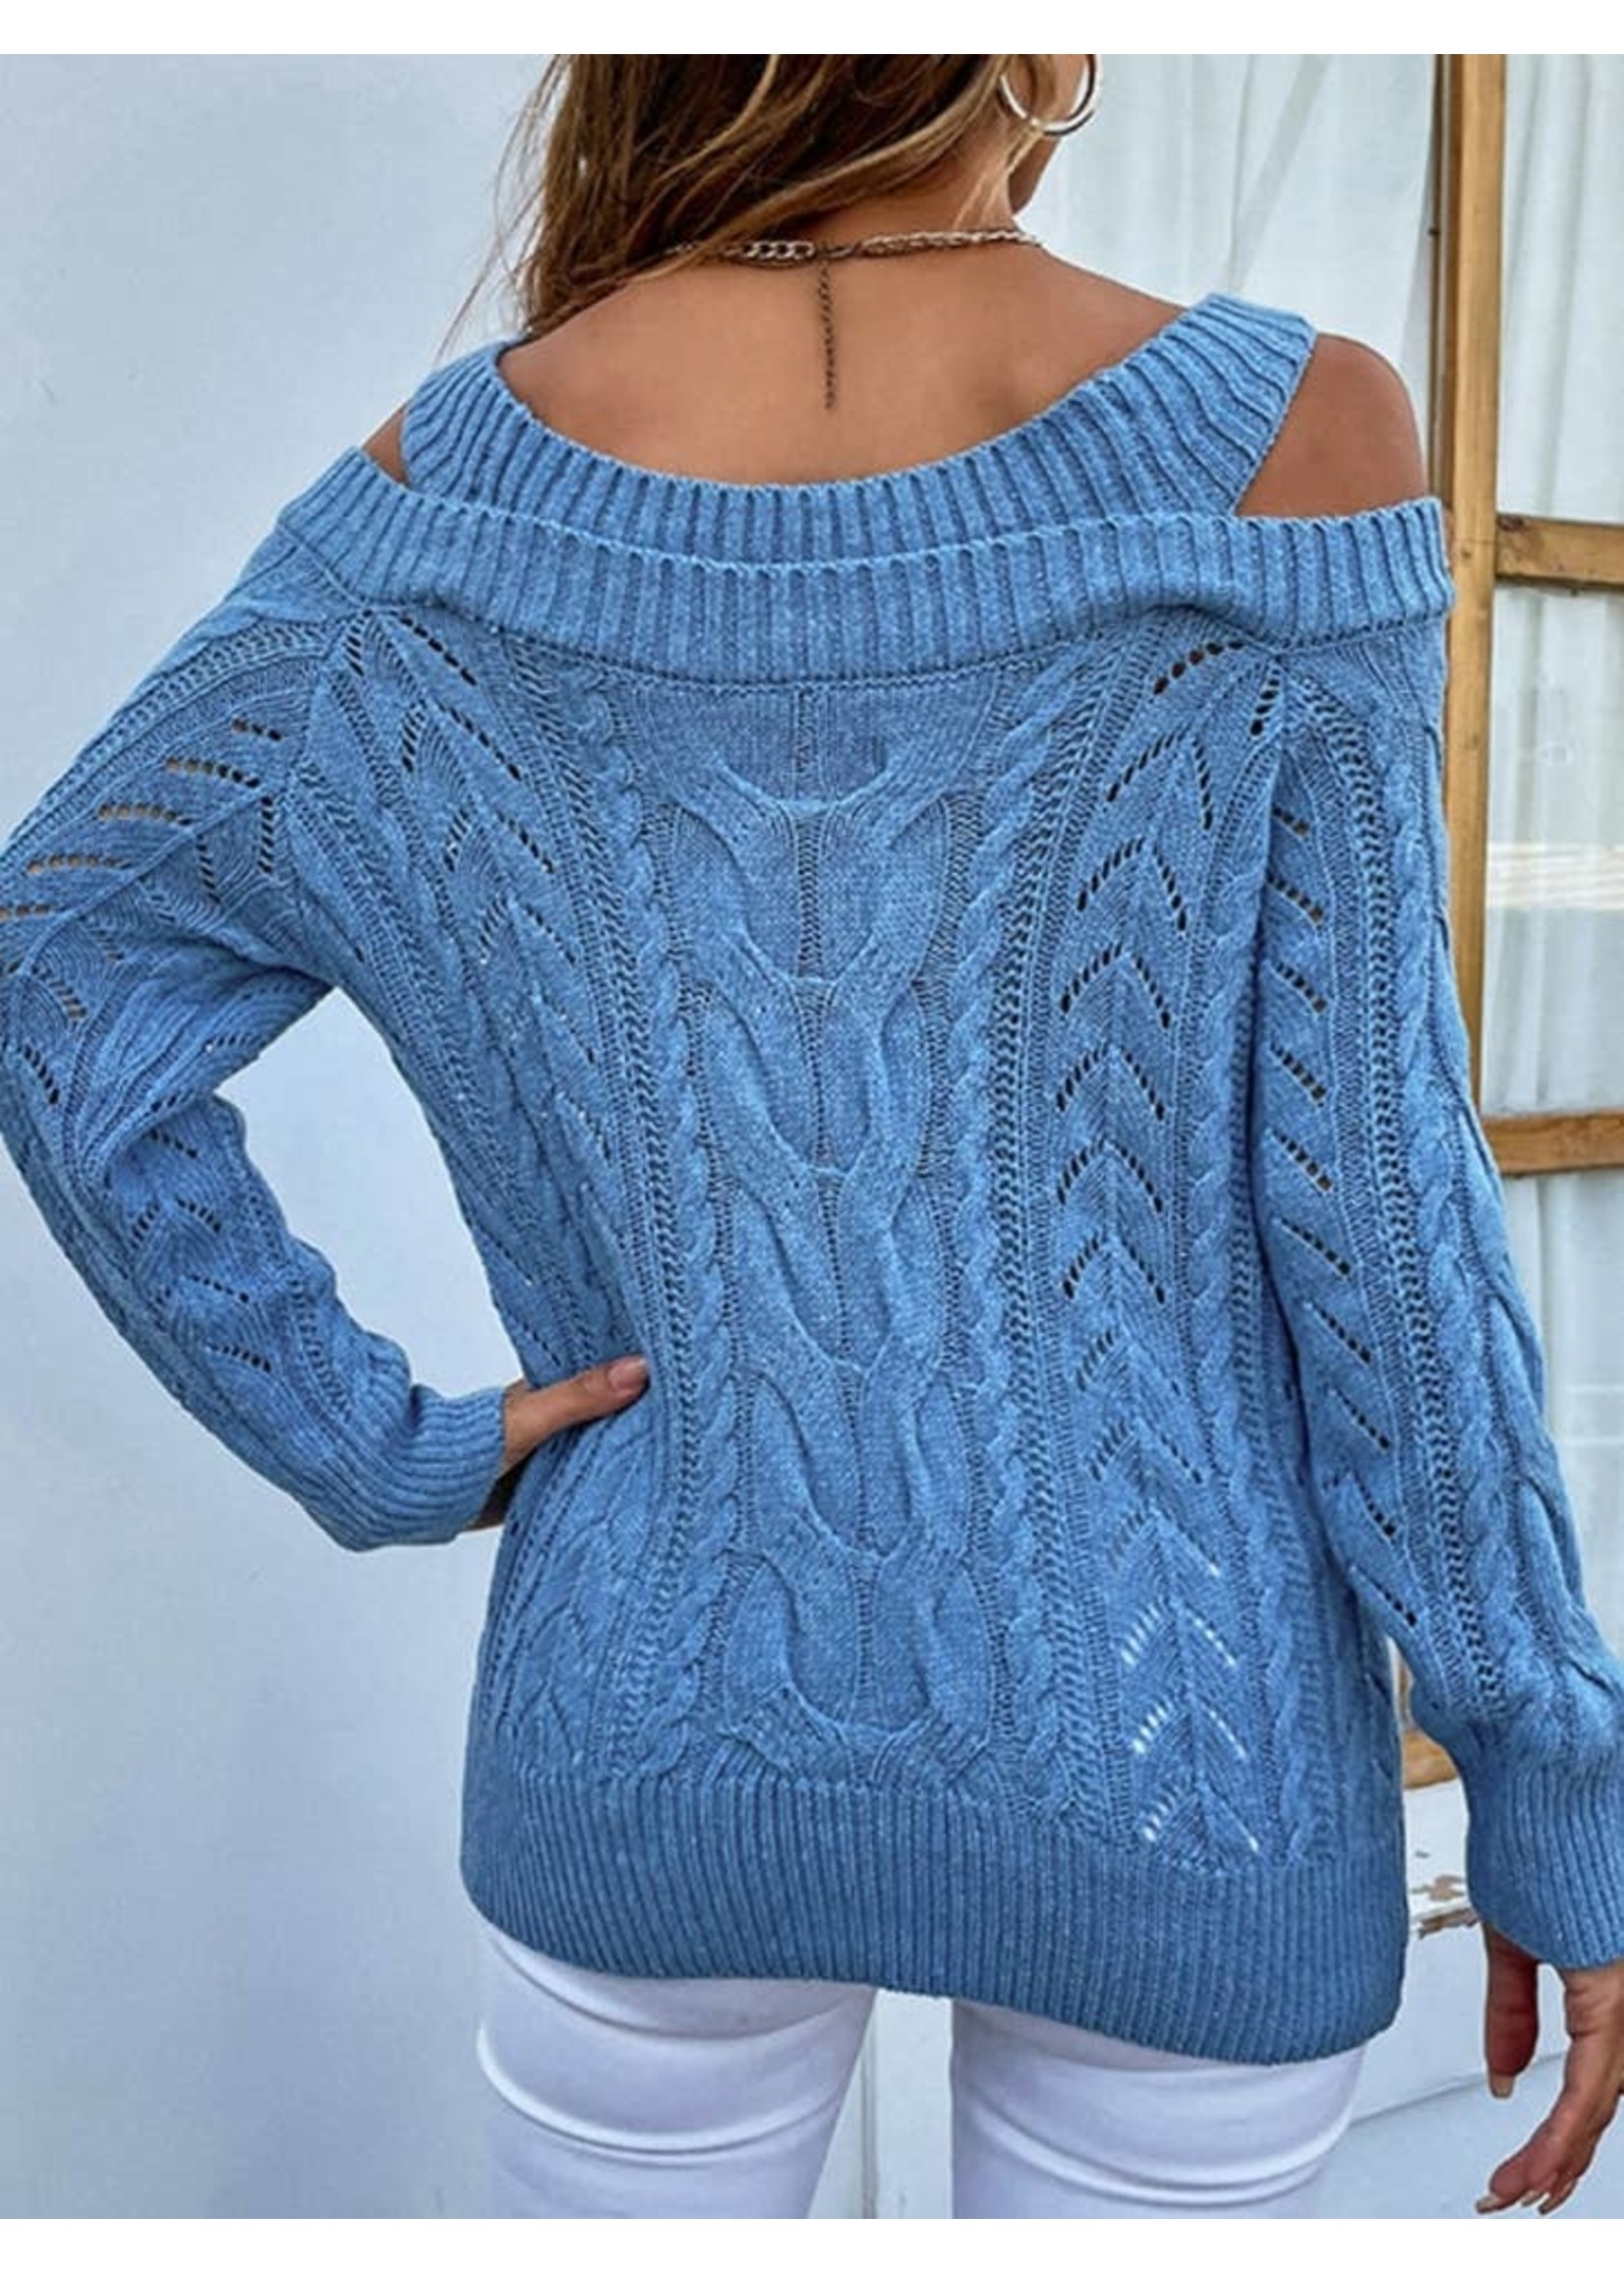 Unishe Cable knit cold shoulder